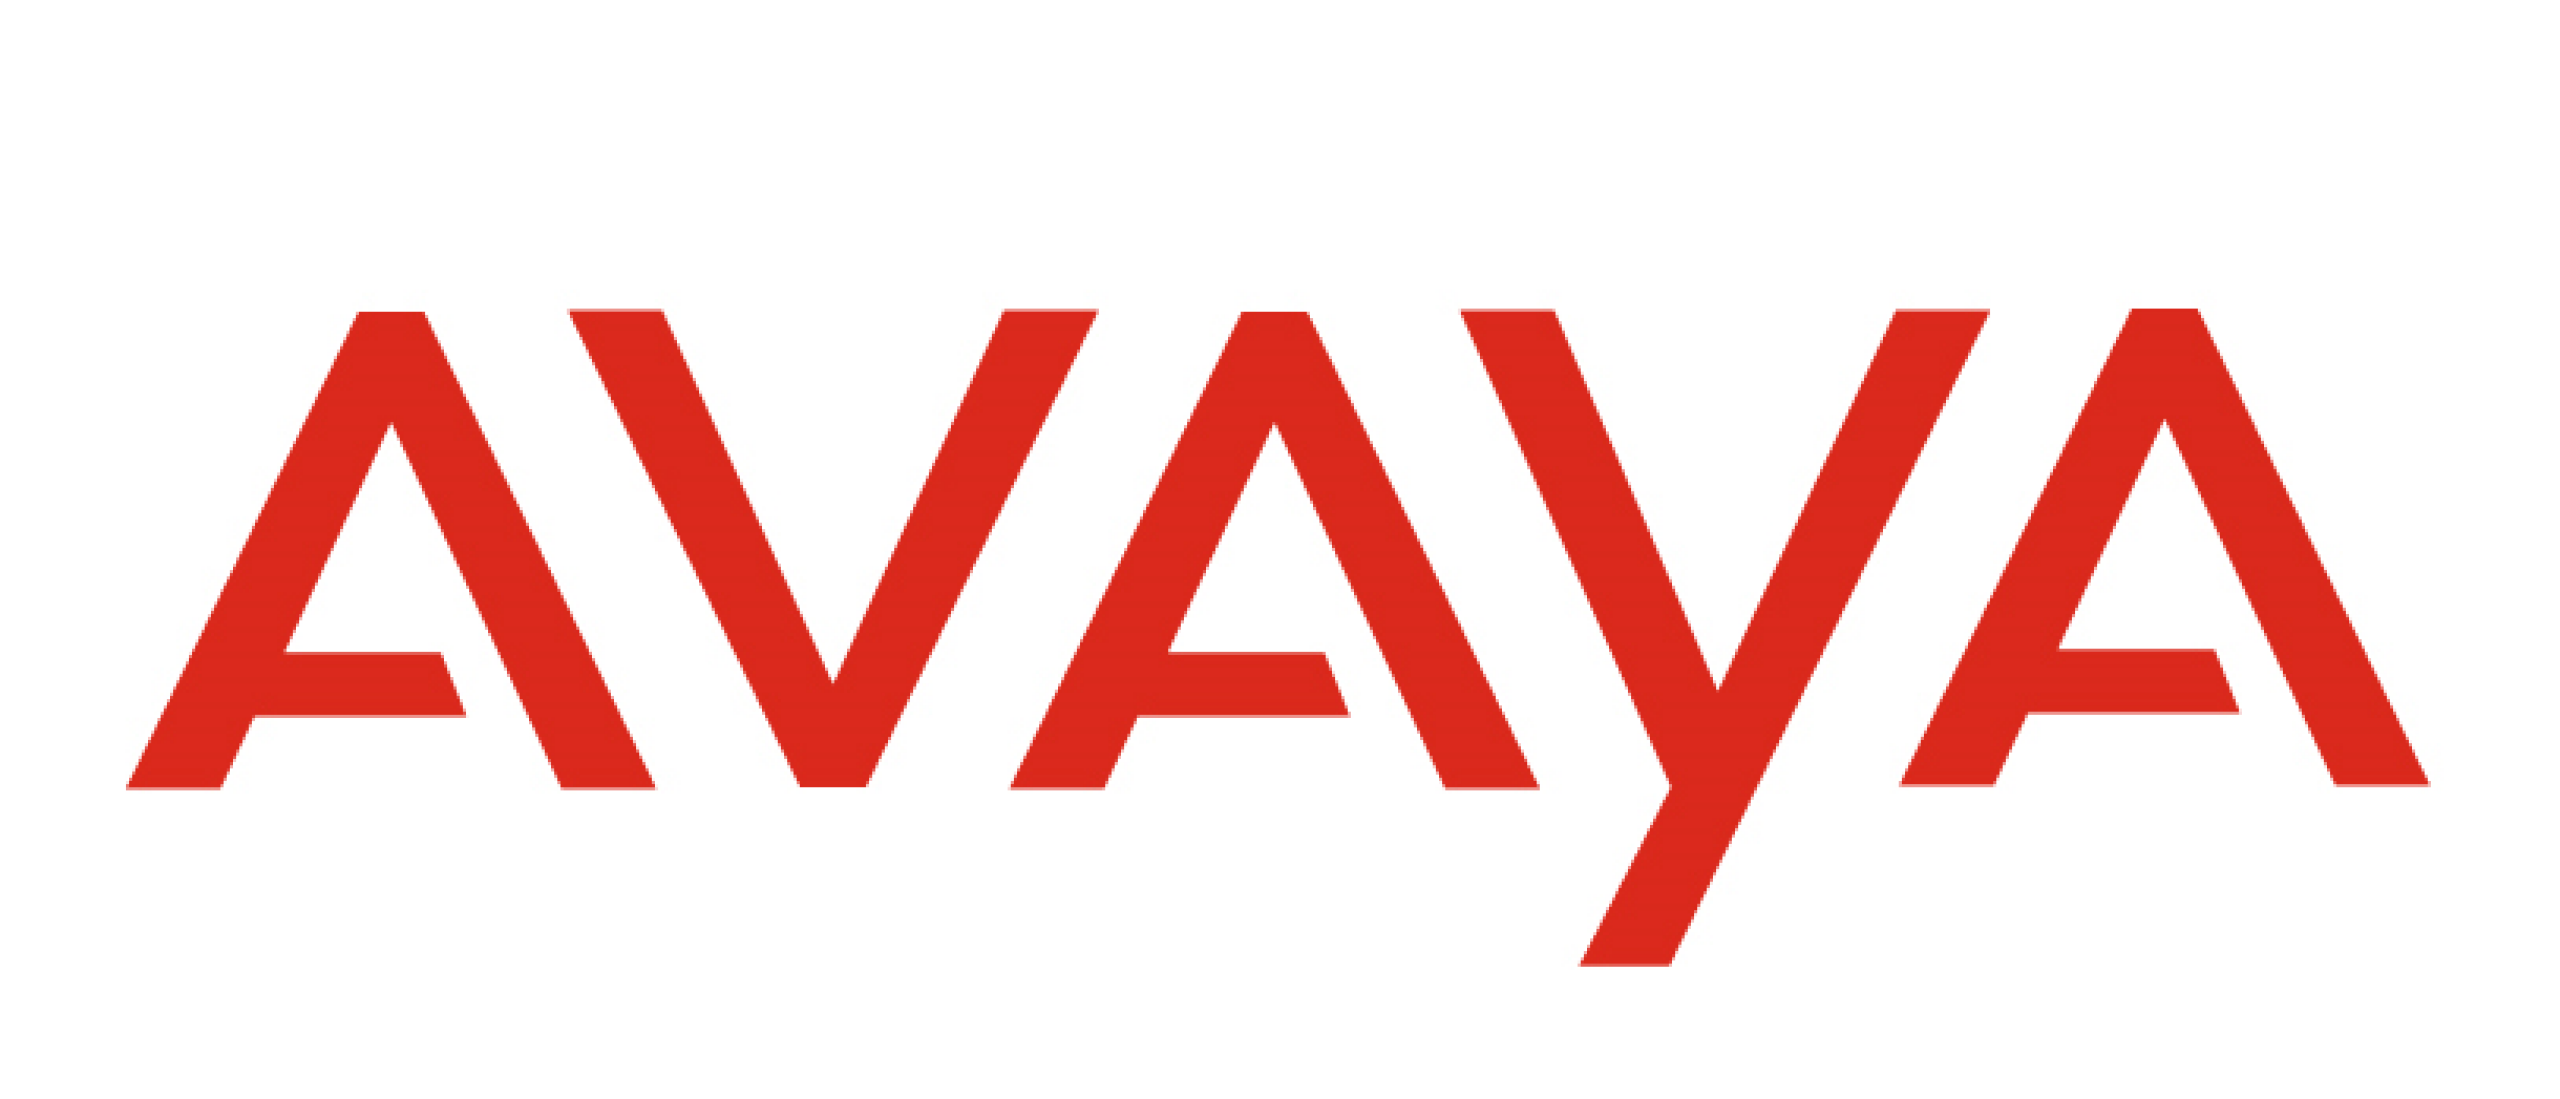 Avaya klantenservice verbeteren